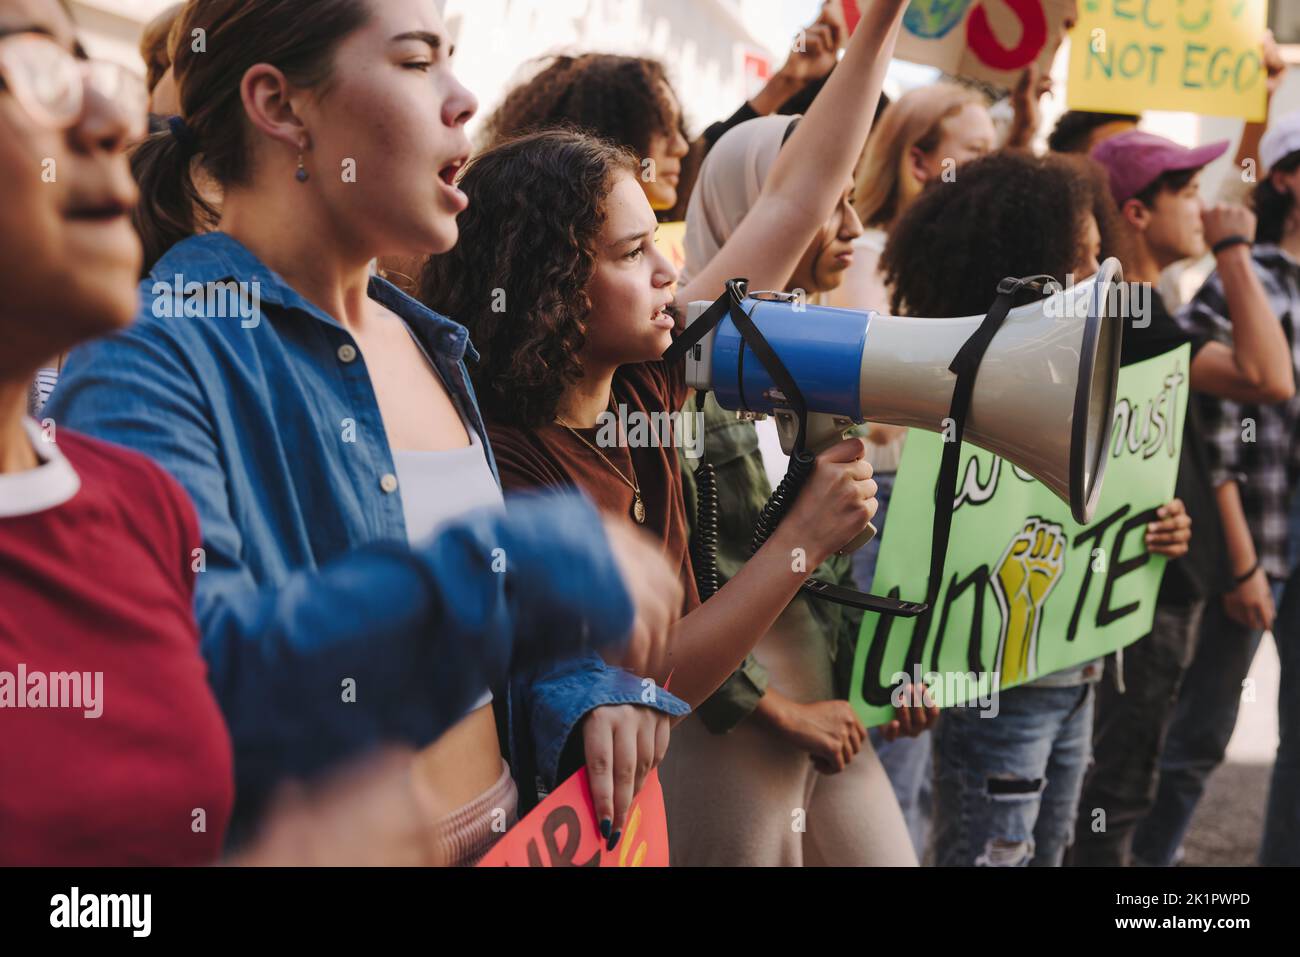 Verschiedene junge Menschen marschieren mit Transparenten und einem Megaphon für Klimagerechtigkeit. Gruppe multikultureller Jugendaktivisten, die gegen globale Warmi protestieren Stockfoto